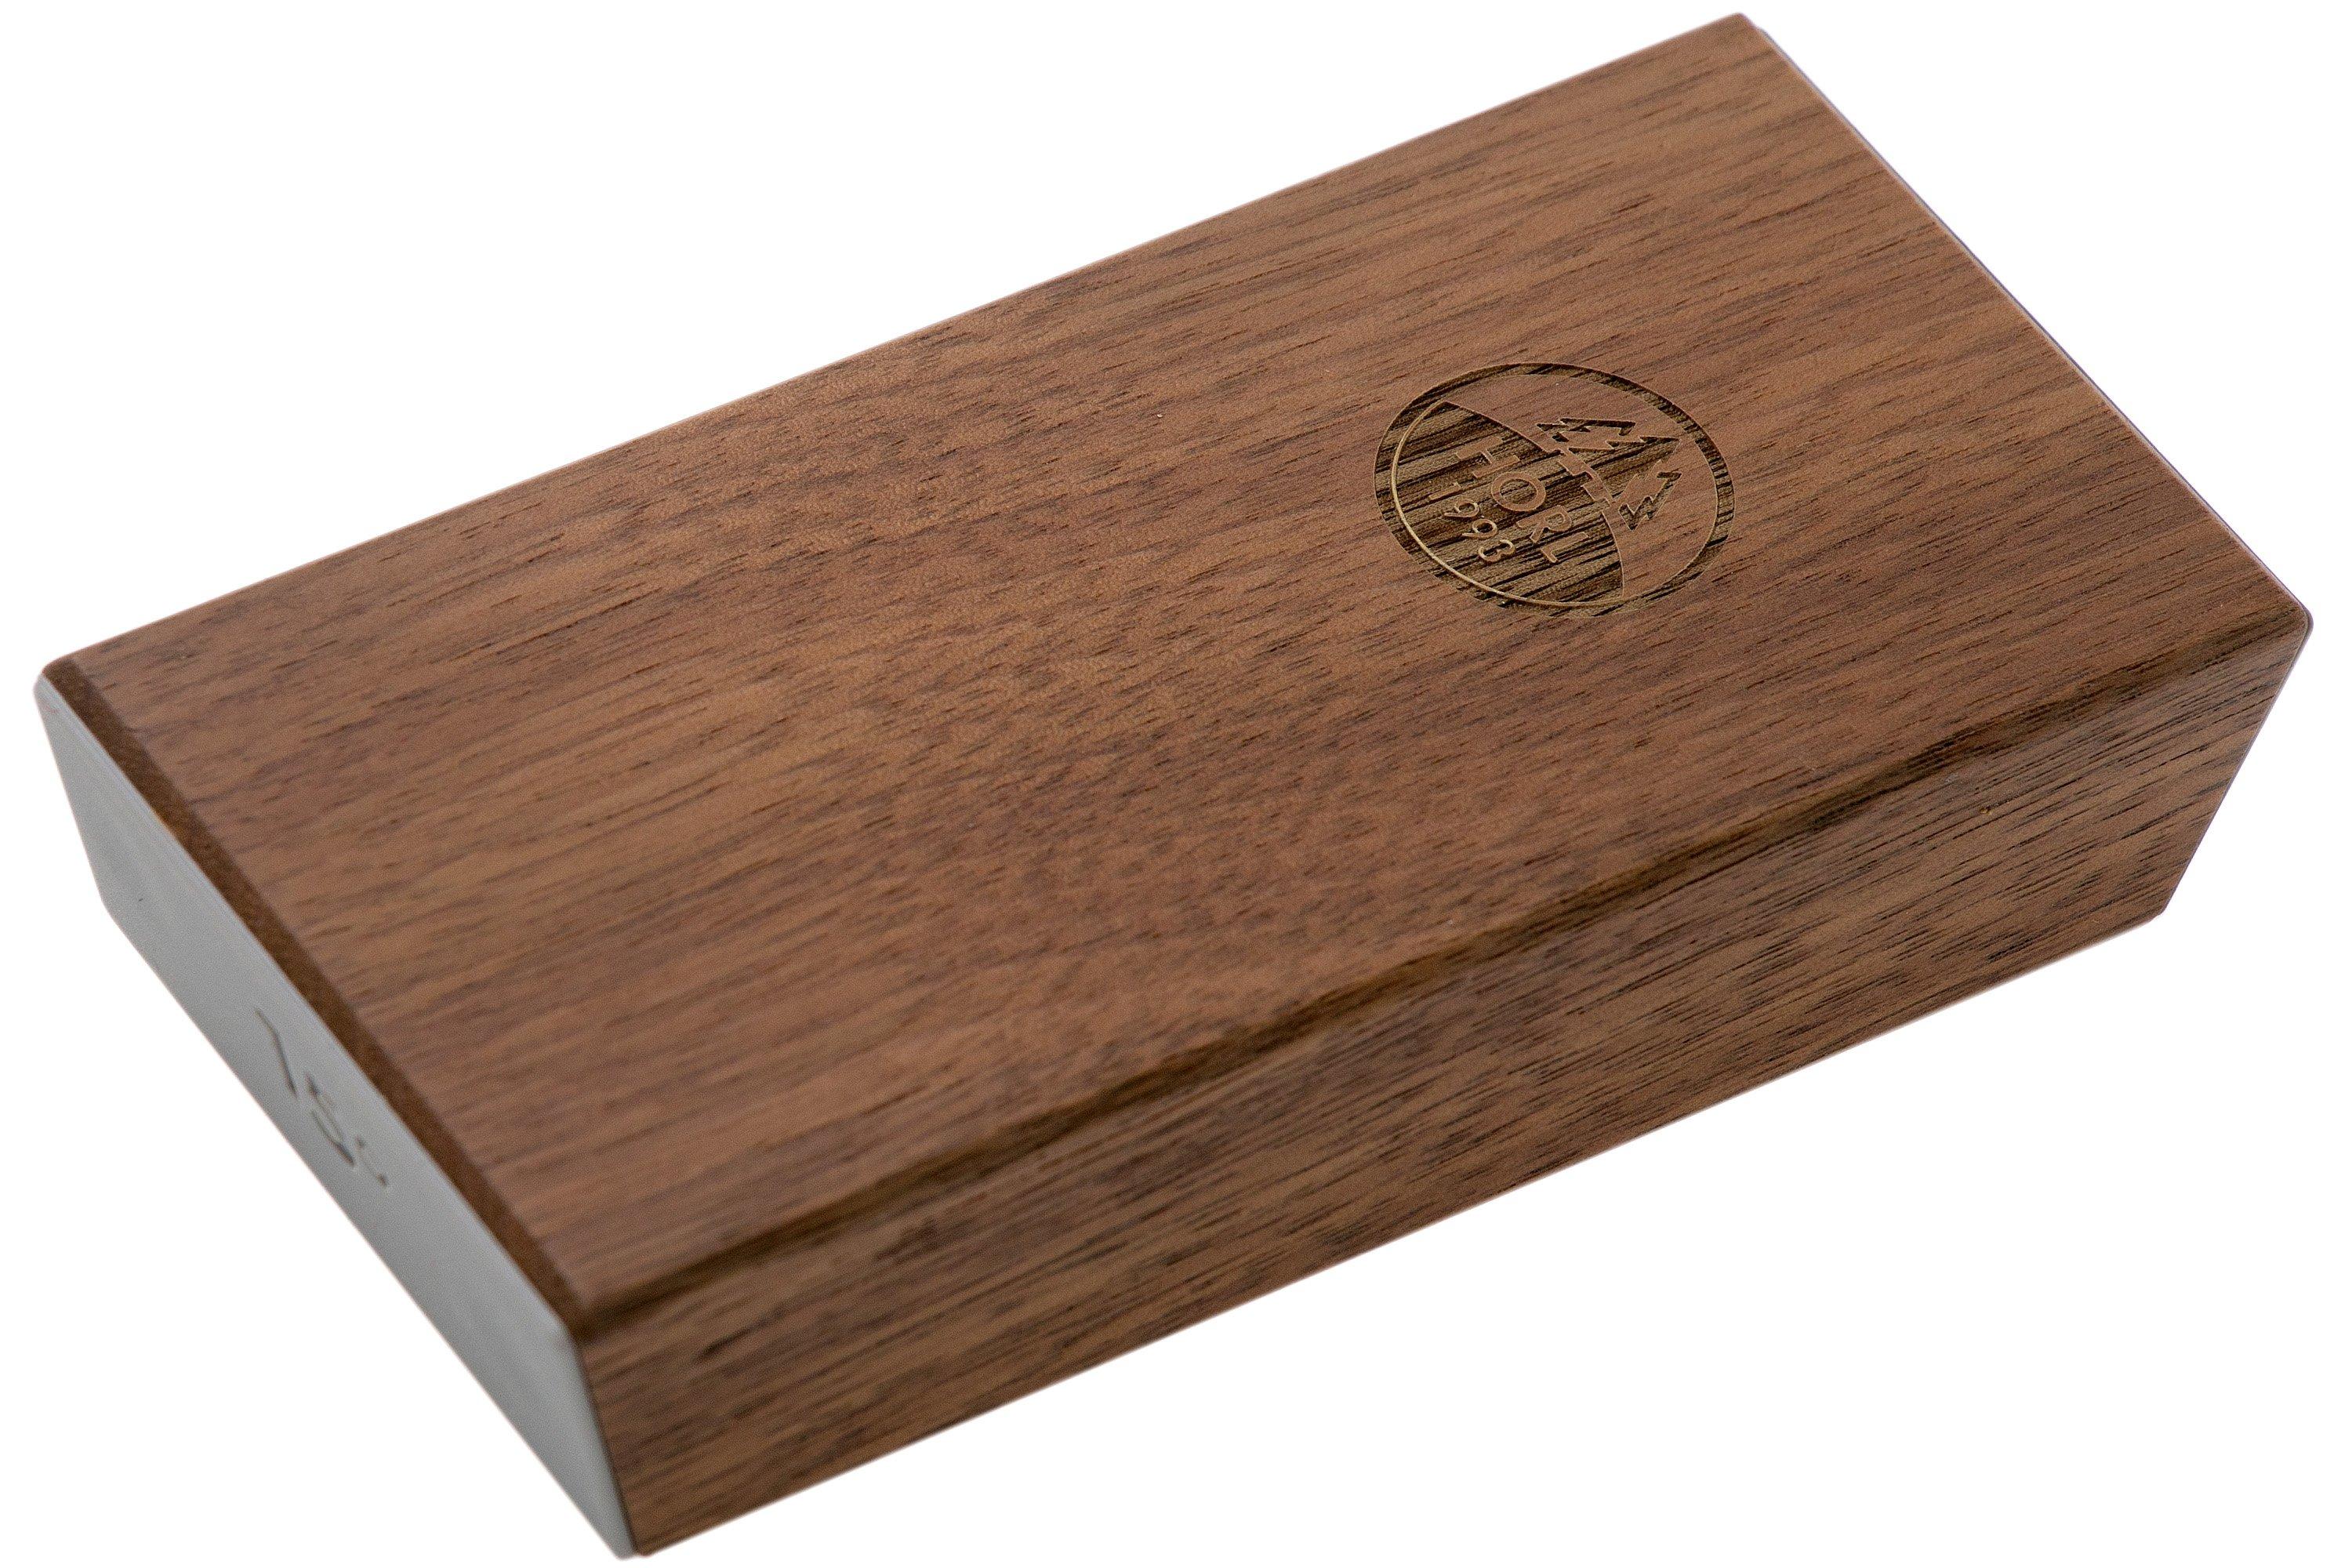 HORL 2 knife sharpener oak wood, HO2E-SET  Advantageously shopping at